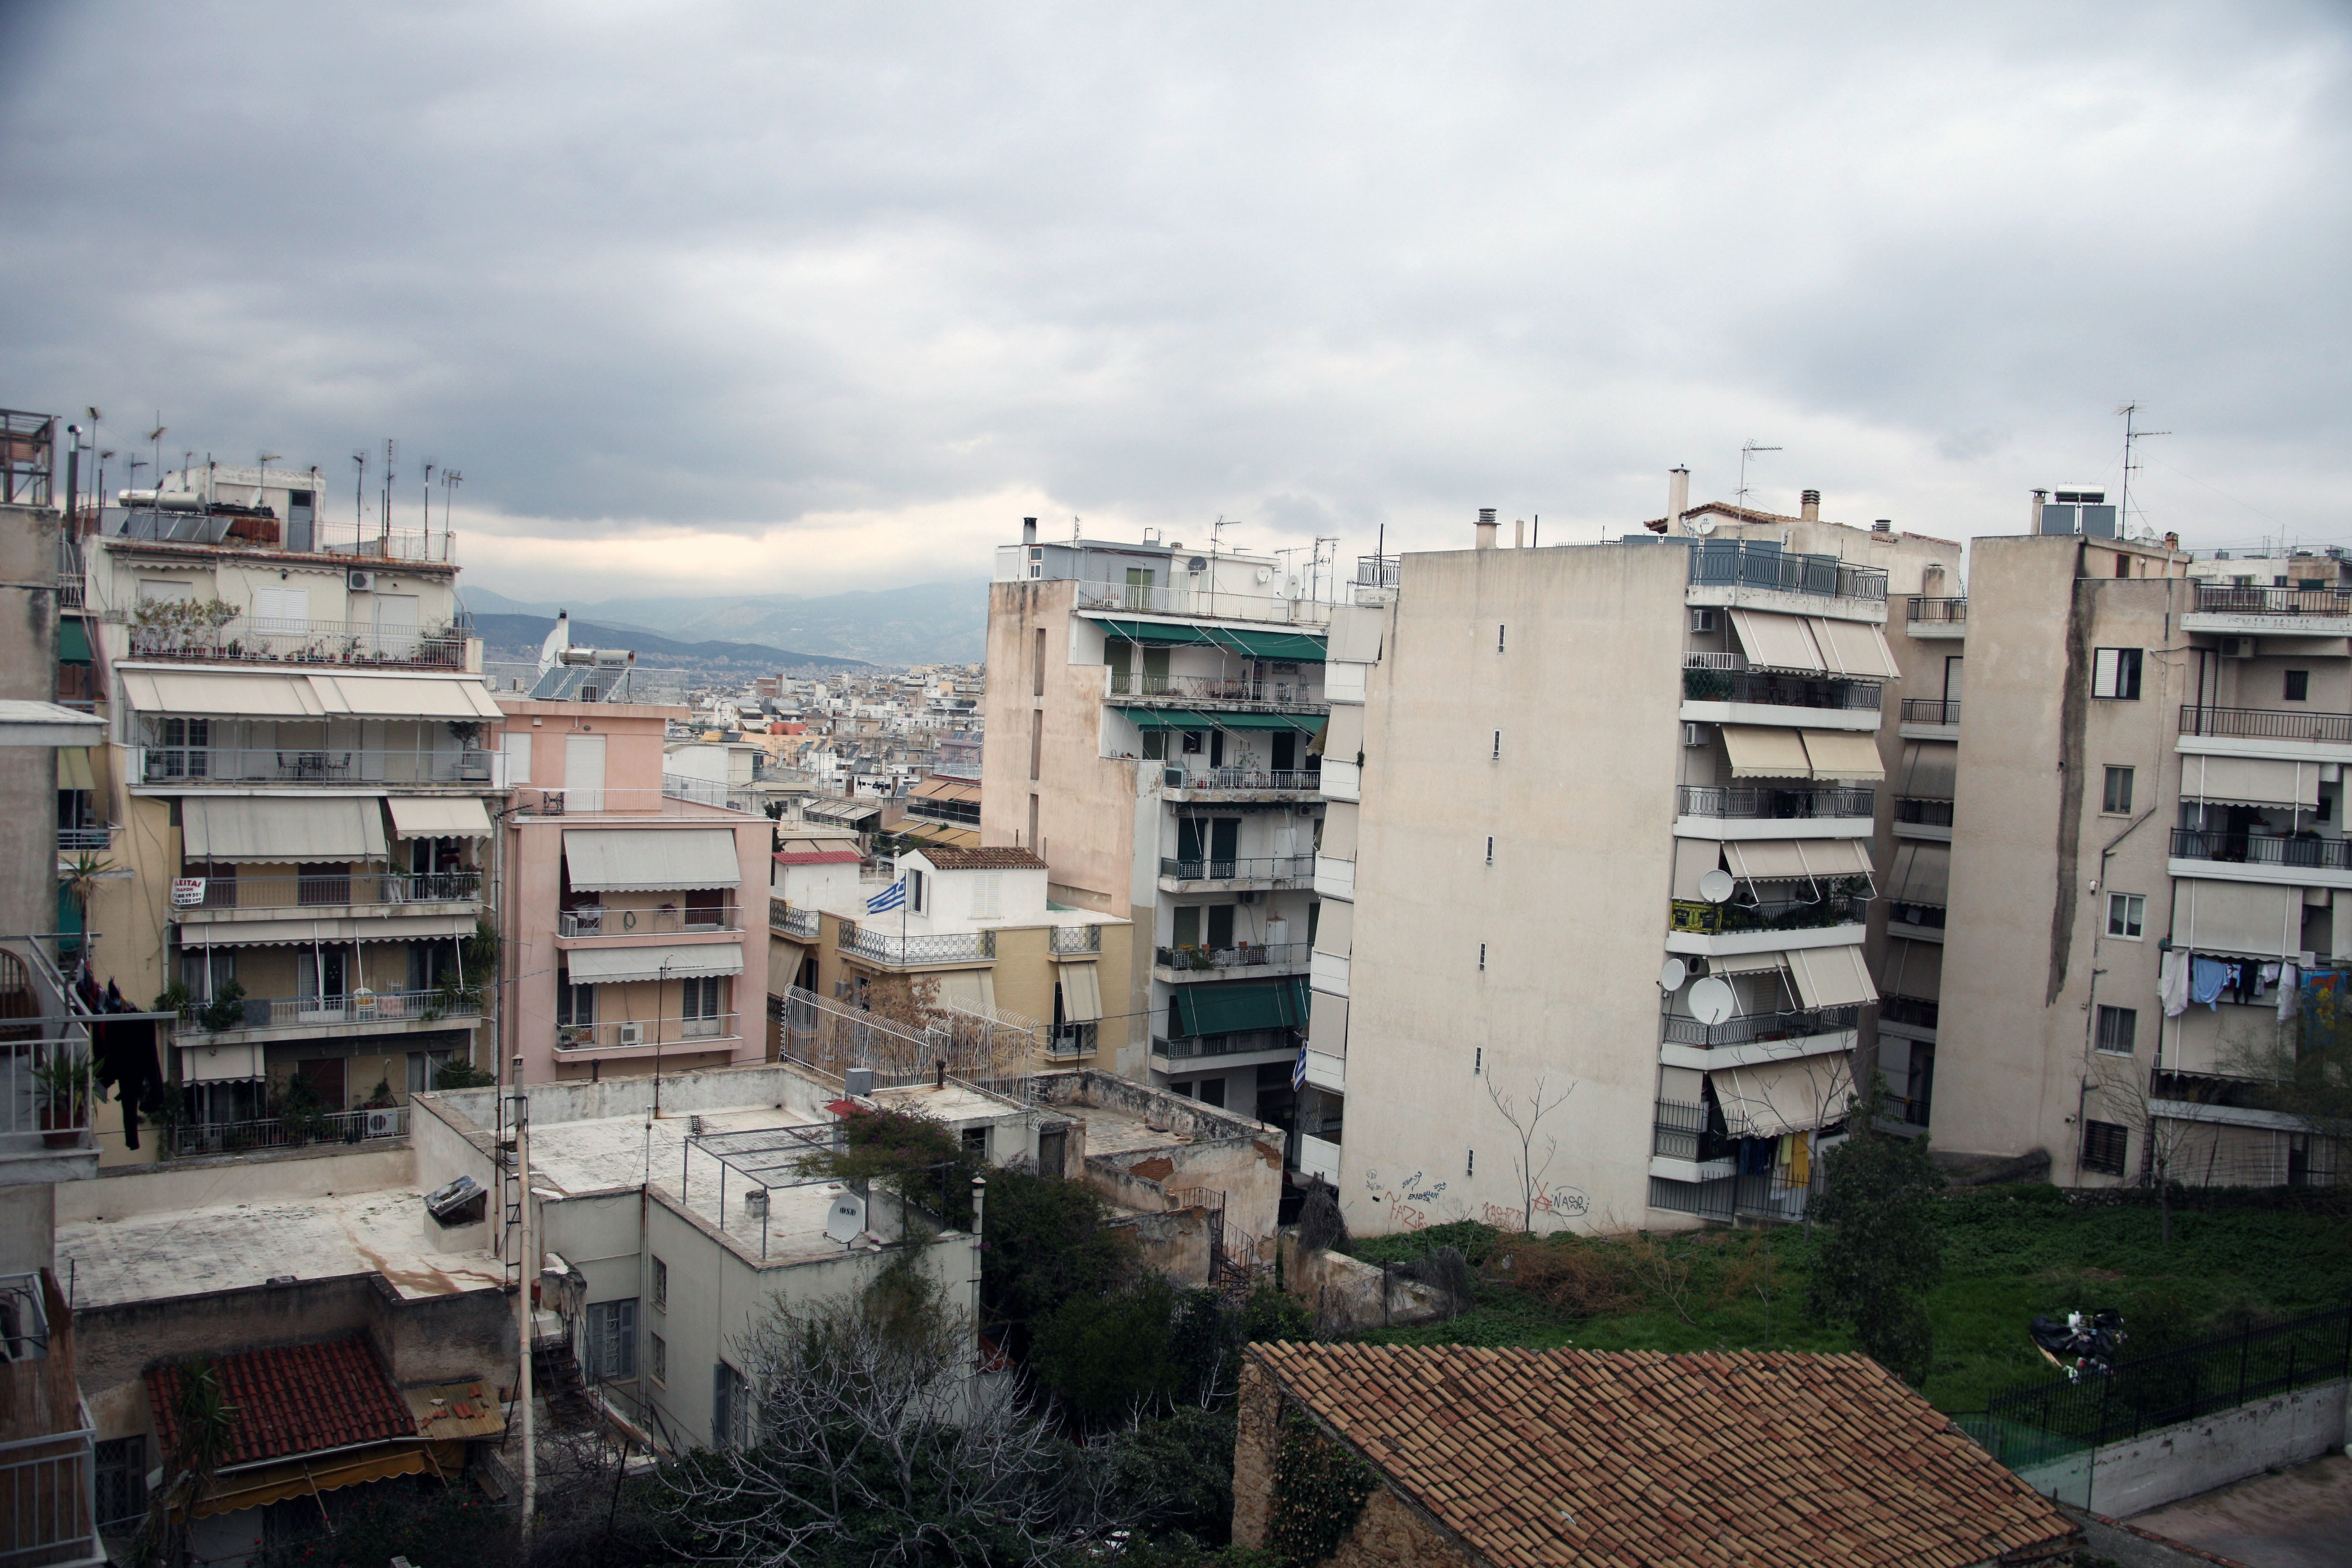 Μαυροβούνιο: Αύξηση 29,7% στις τιμές των νεόδμητων κατοικιών το β’ τρίμηνο του 2013